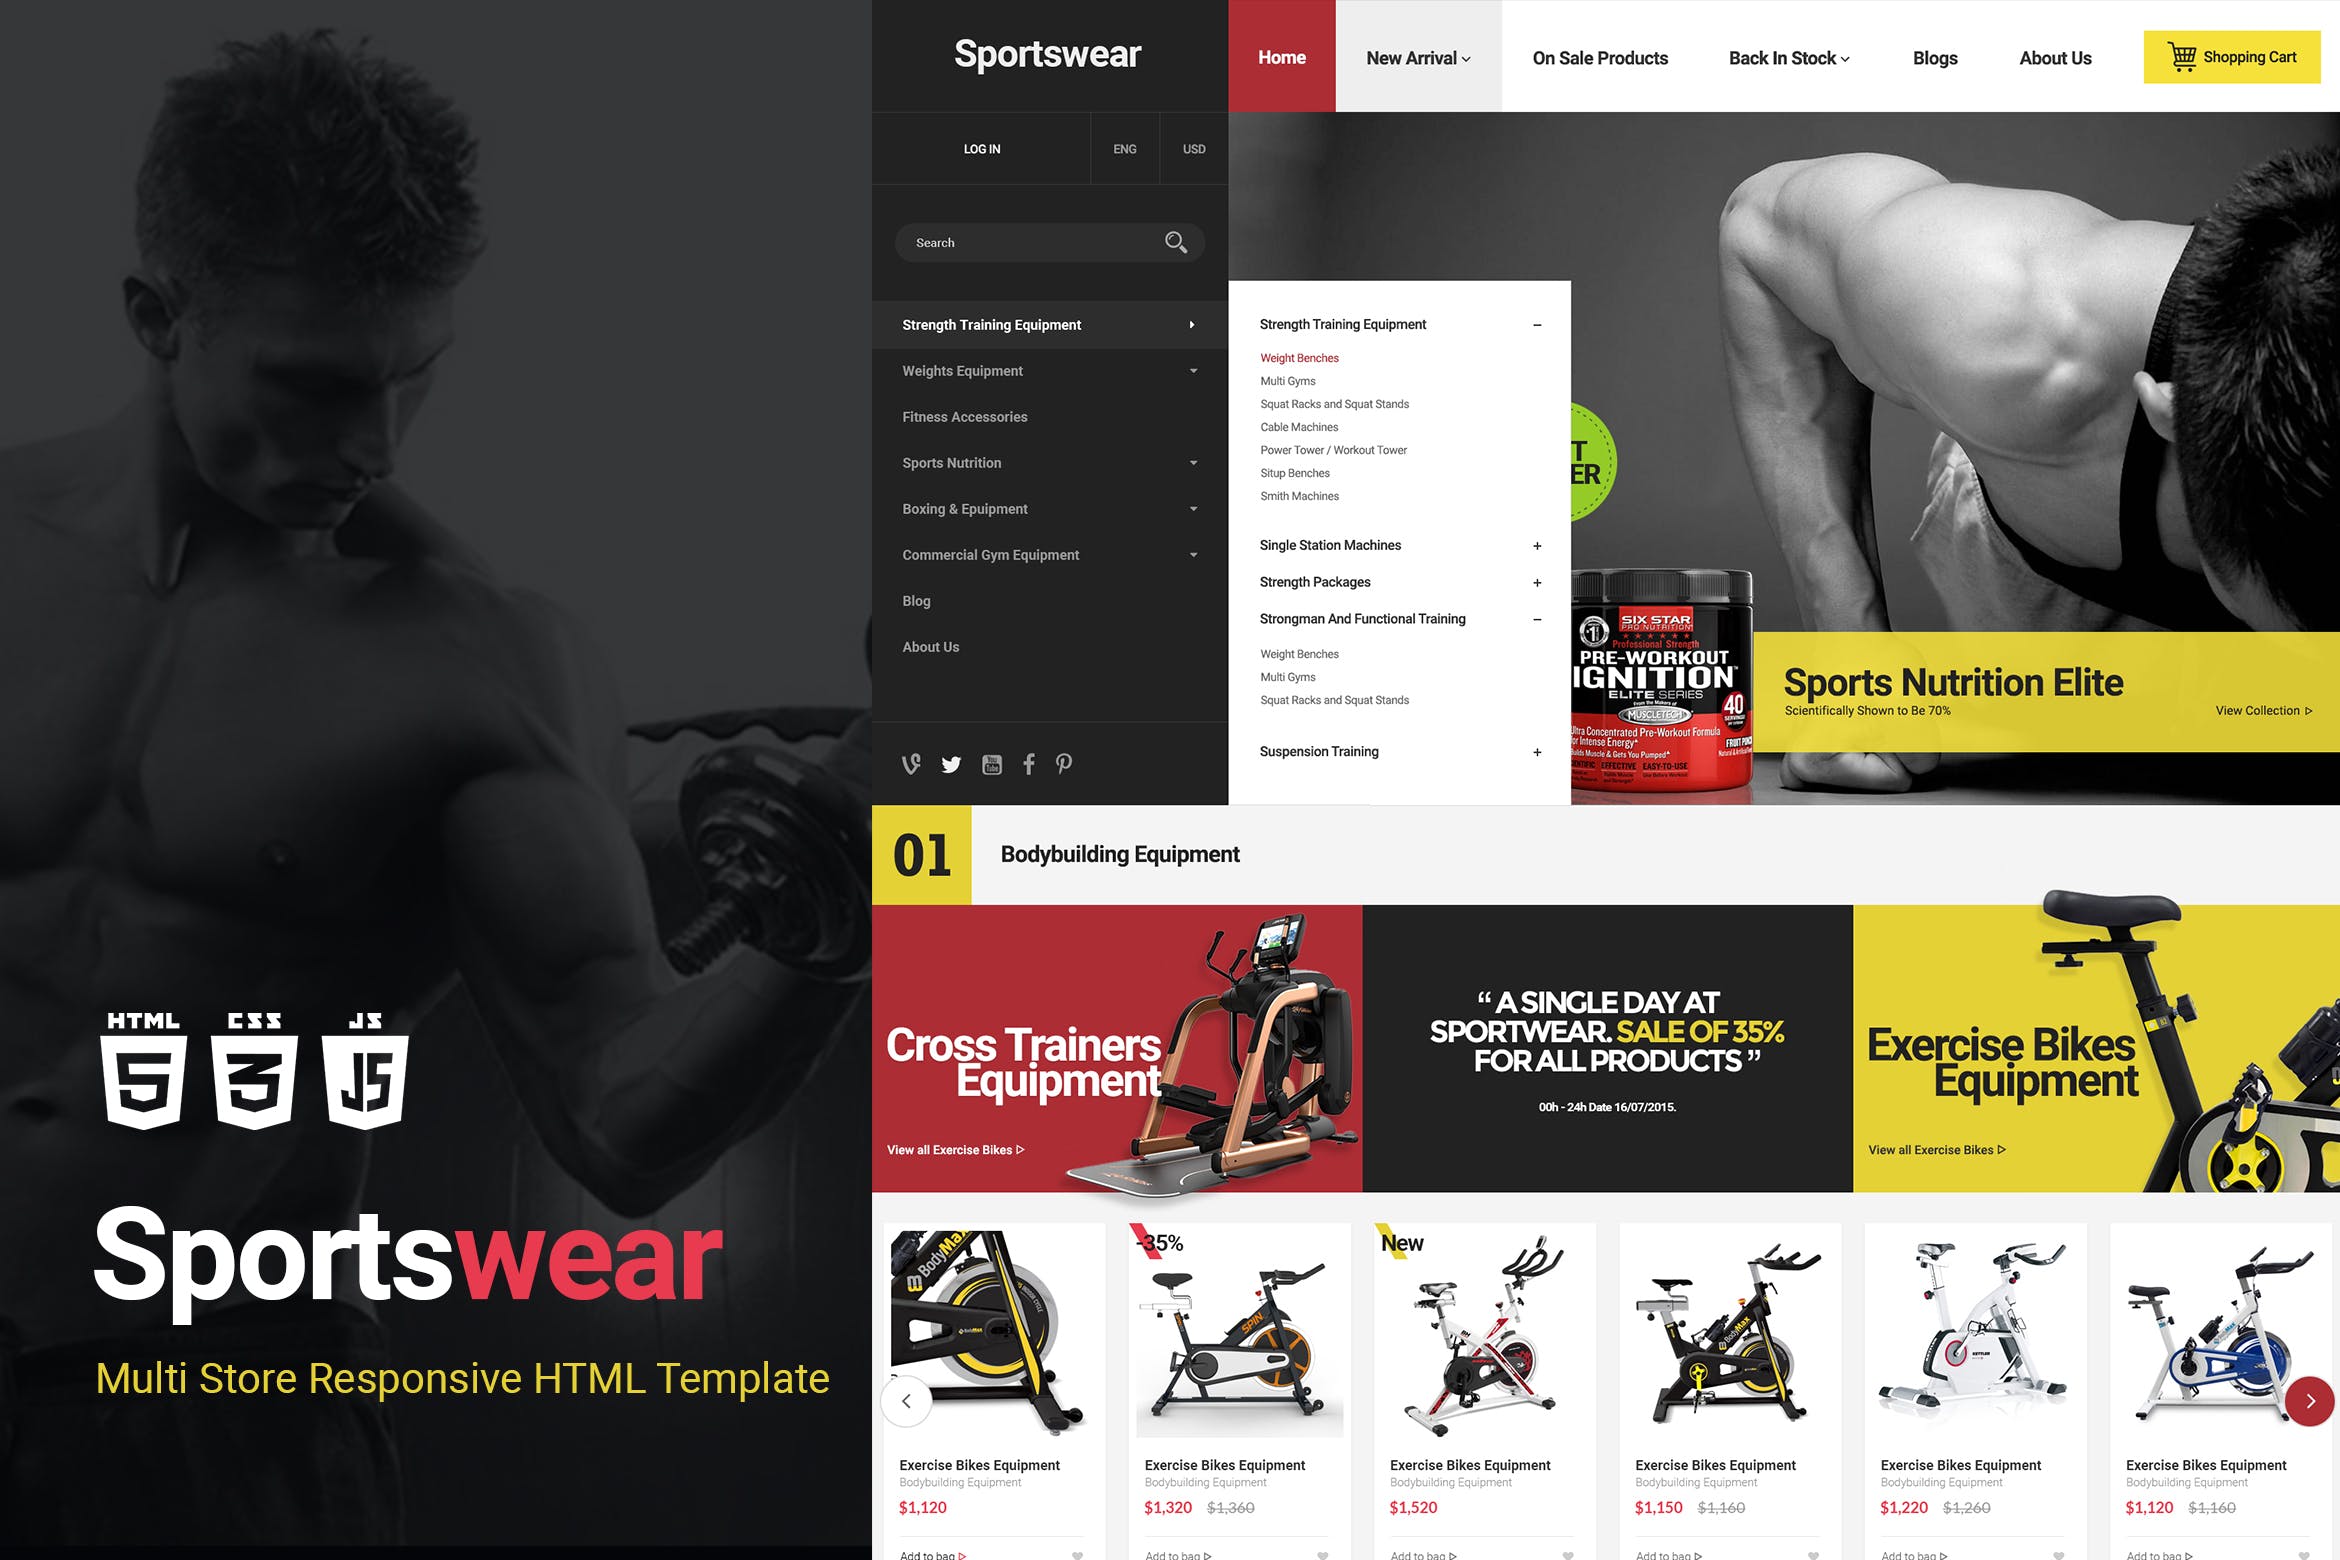 运动器械网上商城HTML模板非凡图库精选素材 Sportwear | Multi Store Responsive HTML Template插图